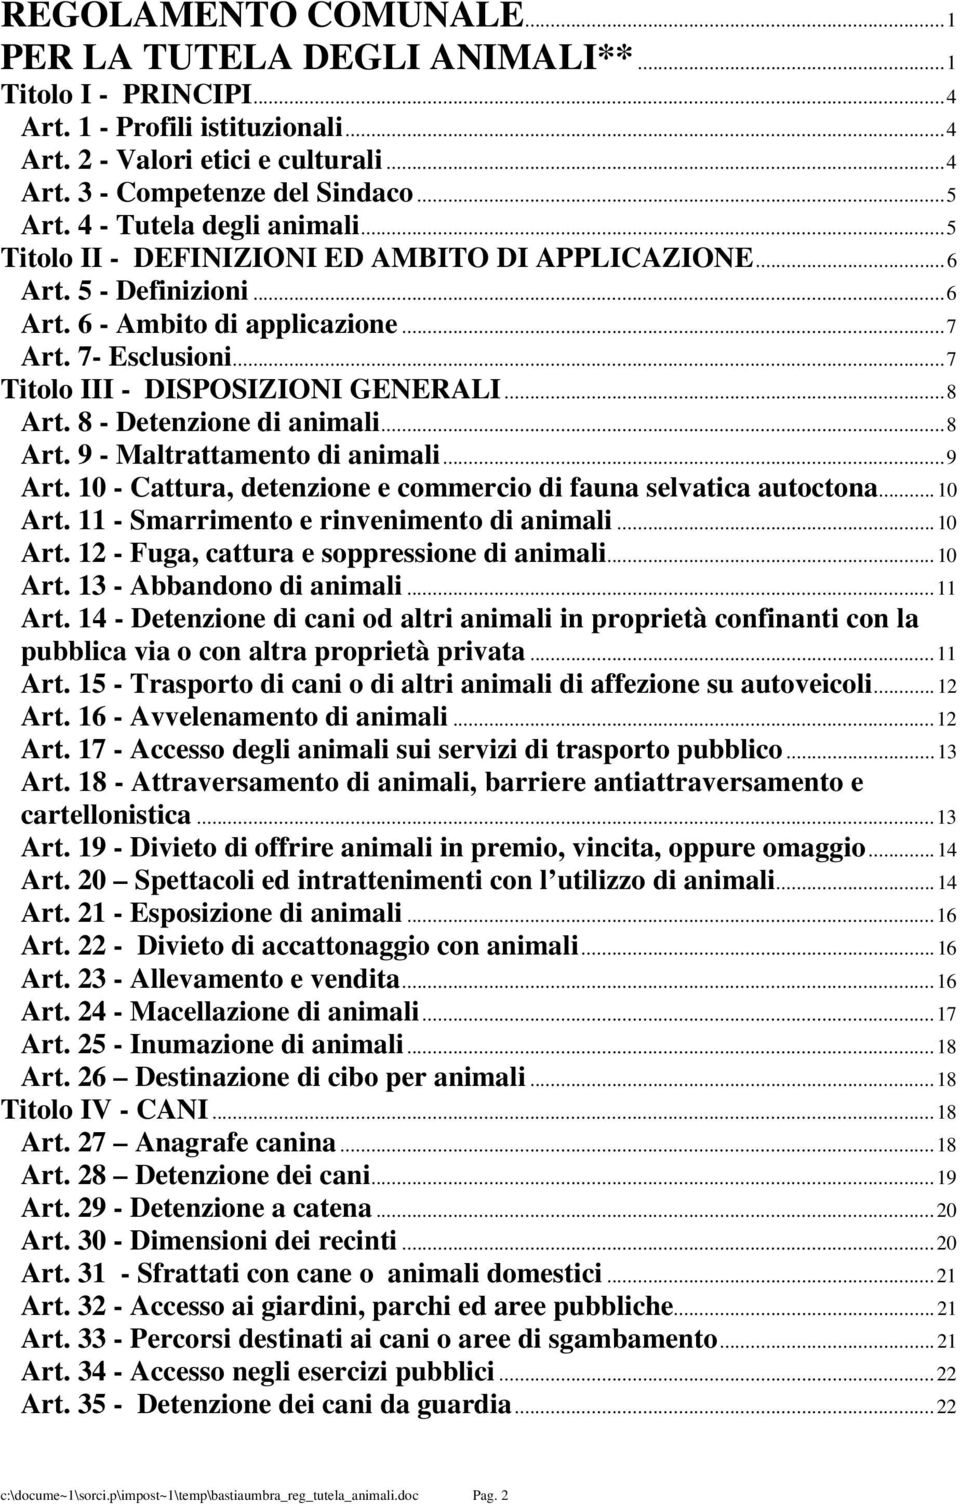 ..8 Art. 8 - Detenzione di animali...8 Art. 9 - Maltrattamento di animali...9 Art. 10 - Cattura, detenzione e commercio di fauna selvatica autoctona...10 Art.